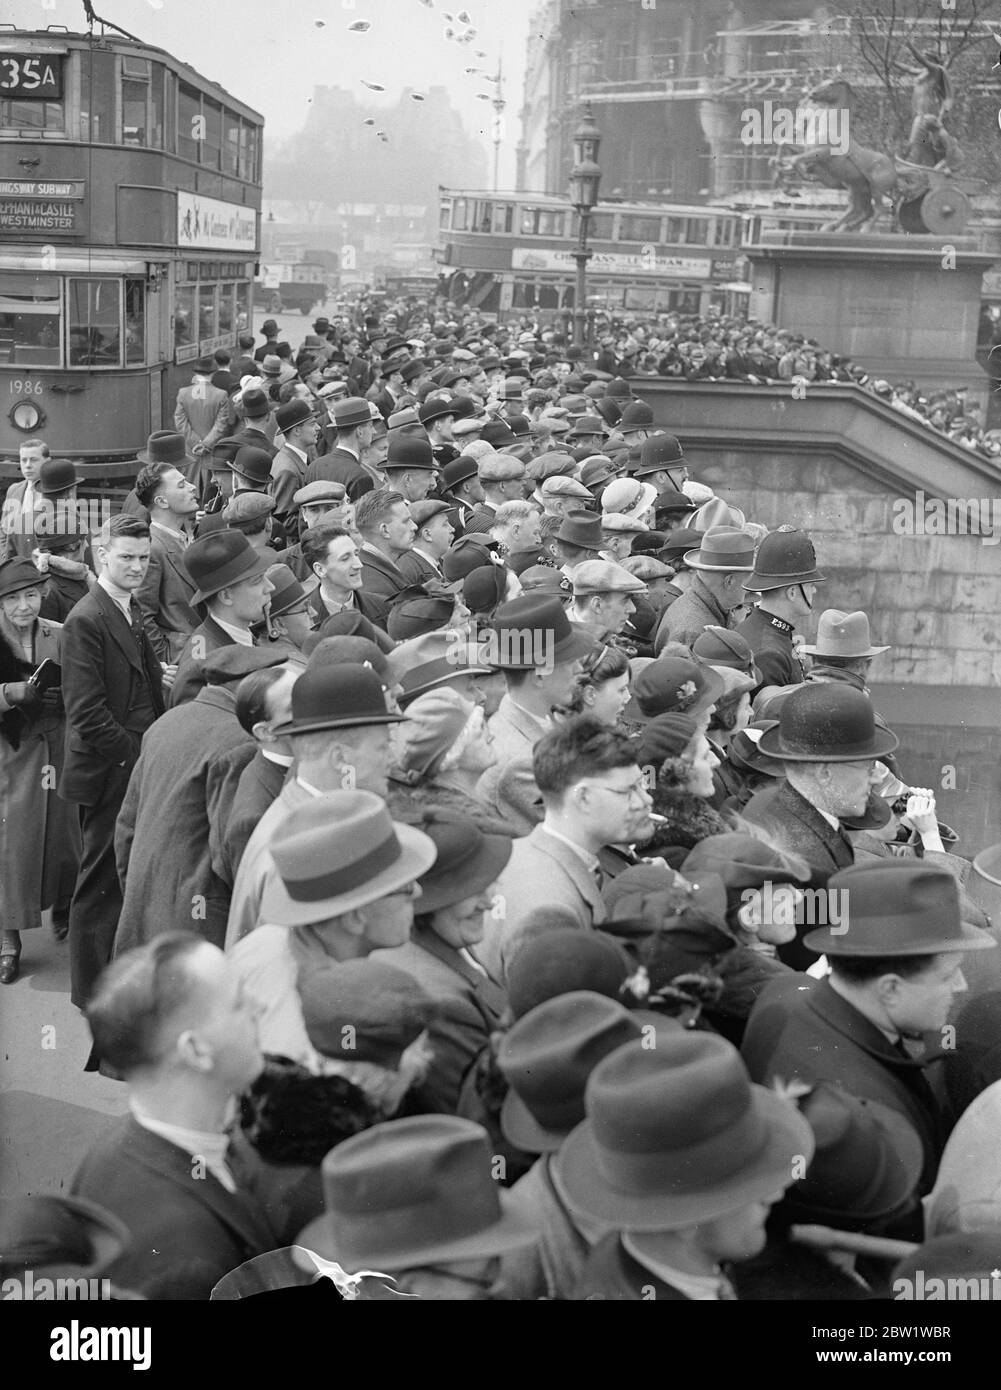 Menschenmassen warten darauf, King und Queen in Westminster zu sehen. Große Menschenmengen versammelten sich auf der Westminster Bridge, um zu sehen, wie der König und die Königin auf dem Royal Barge nach Greenwich einschiffen, wo sie das neue National Maritime Museum eröffnen werden. Foto zeigt: Die große Menschenmenge auf der Westminster Bridge wartet auf den König und die Königin. 27. April 1937 Stockfoto